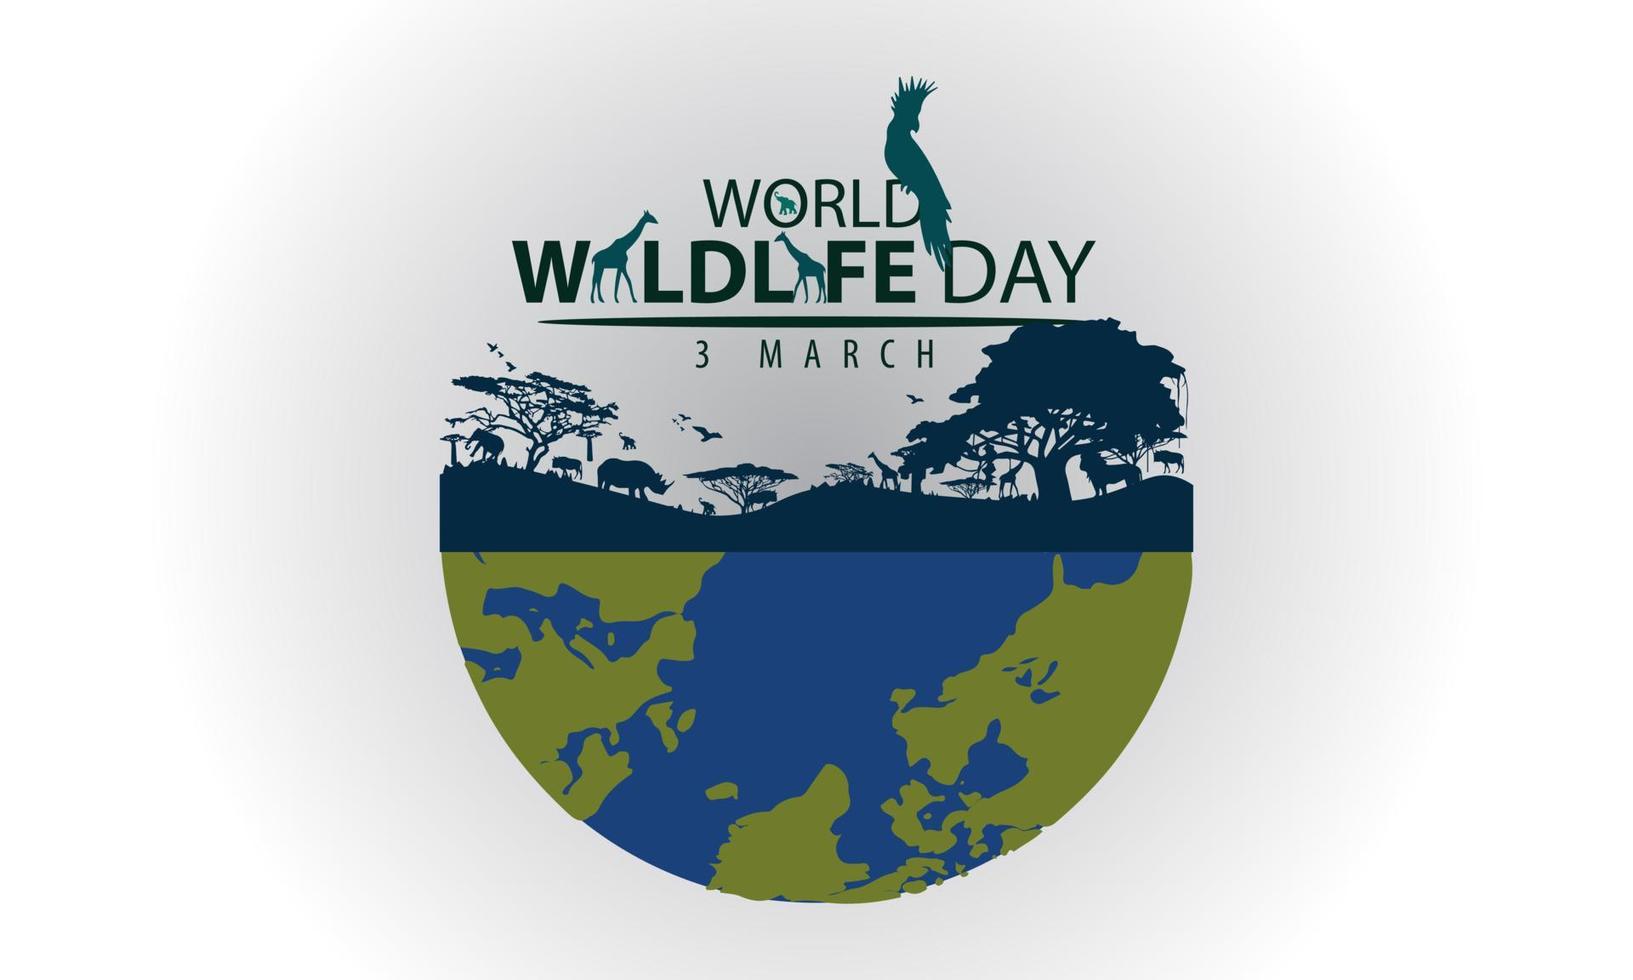 festividades del día mundial de la vida silvestre, animales, tierra y bosque. diseño vectorial adecuado para banners, fondos. vector